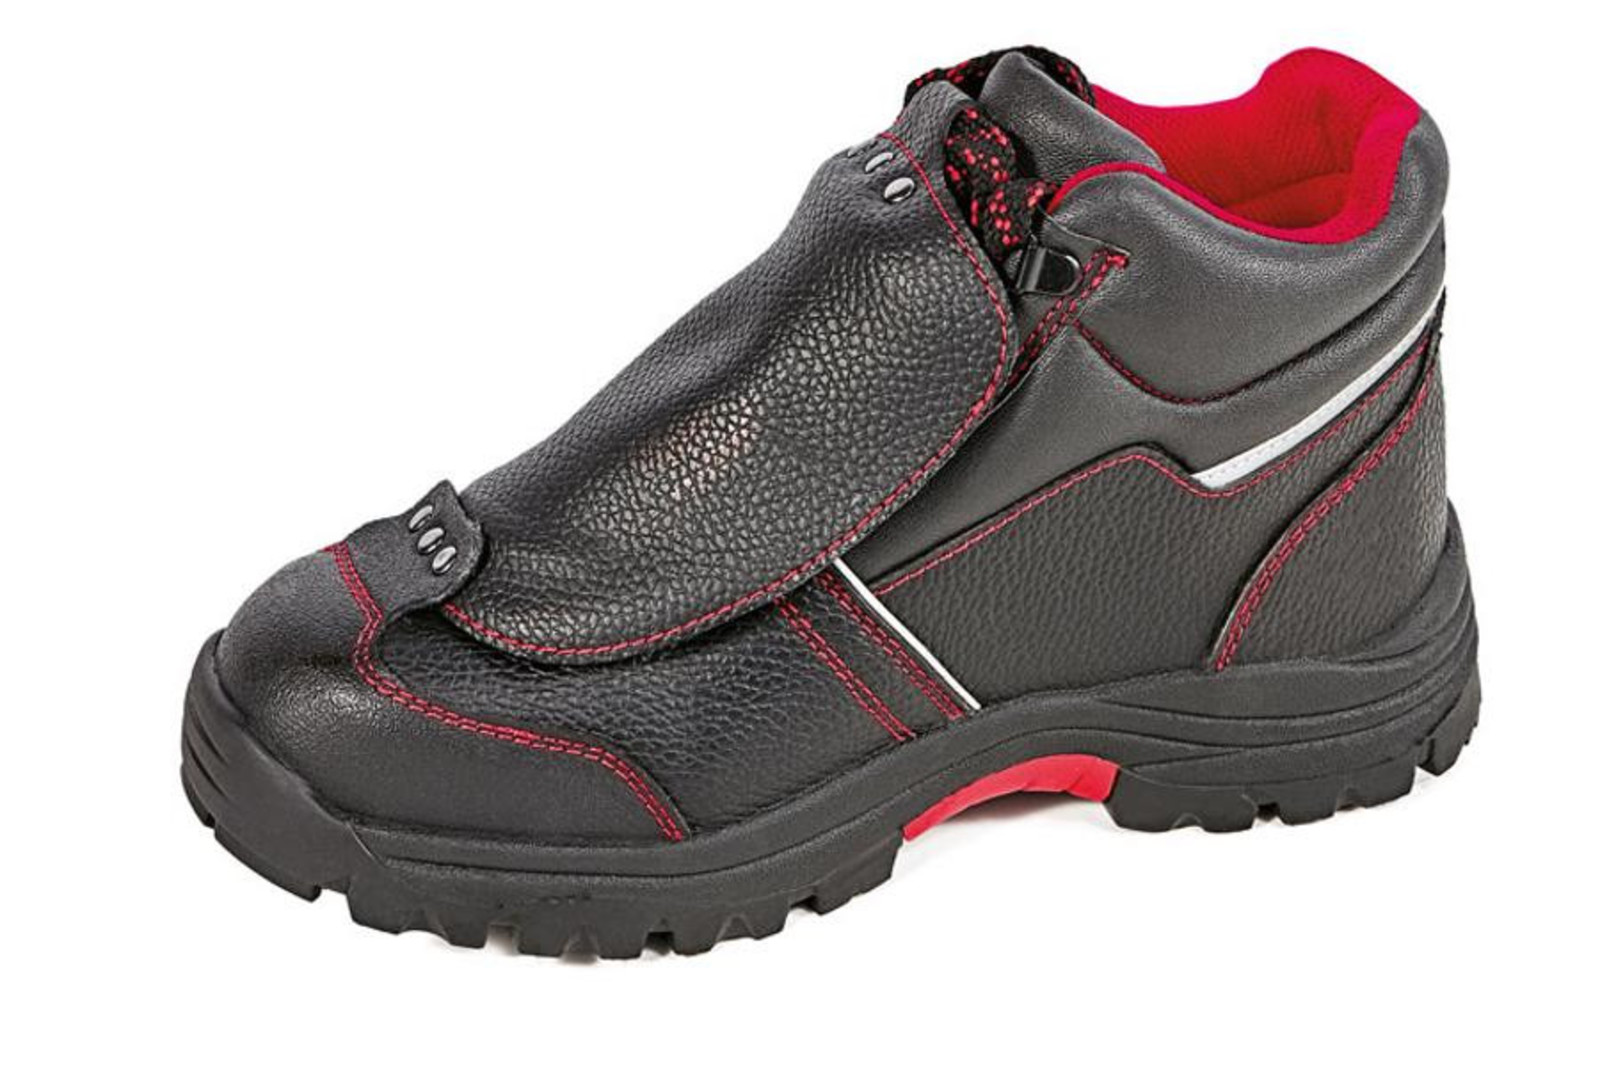 Bezpečnostná členková obuv Cerva Steeler Metatarsal S3 HRO M SRA  - veľkosť: 39, farba: čierna